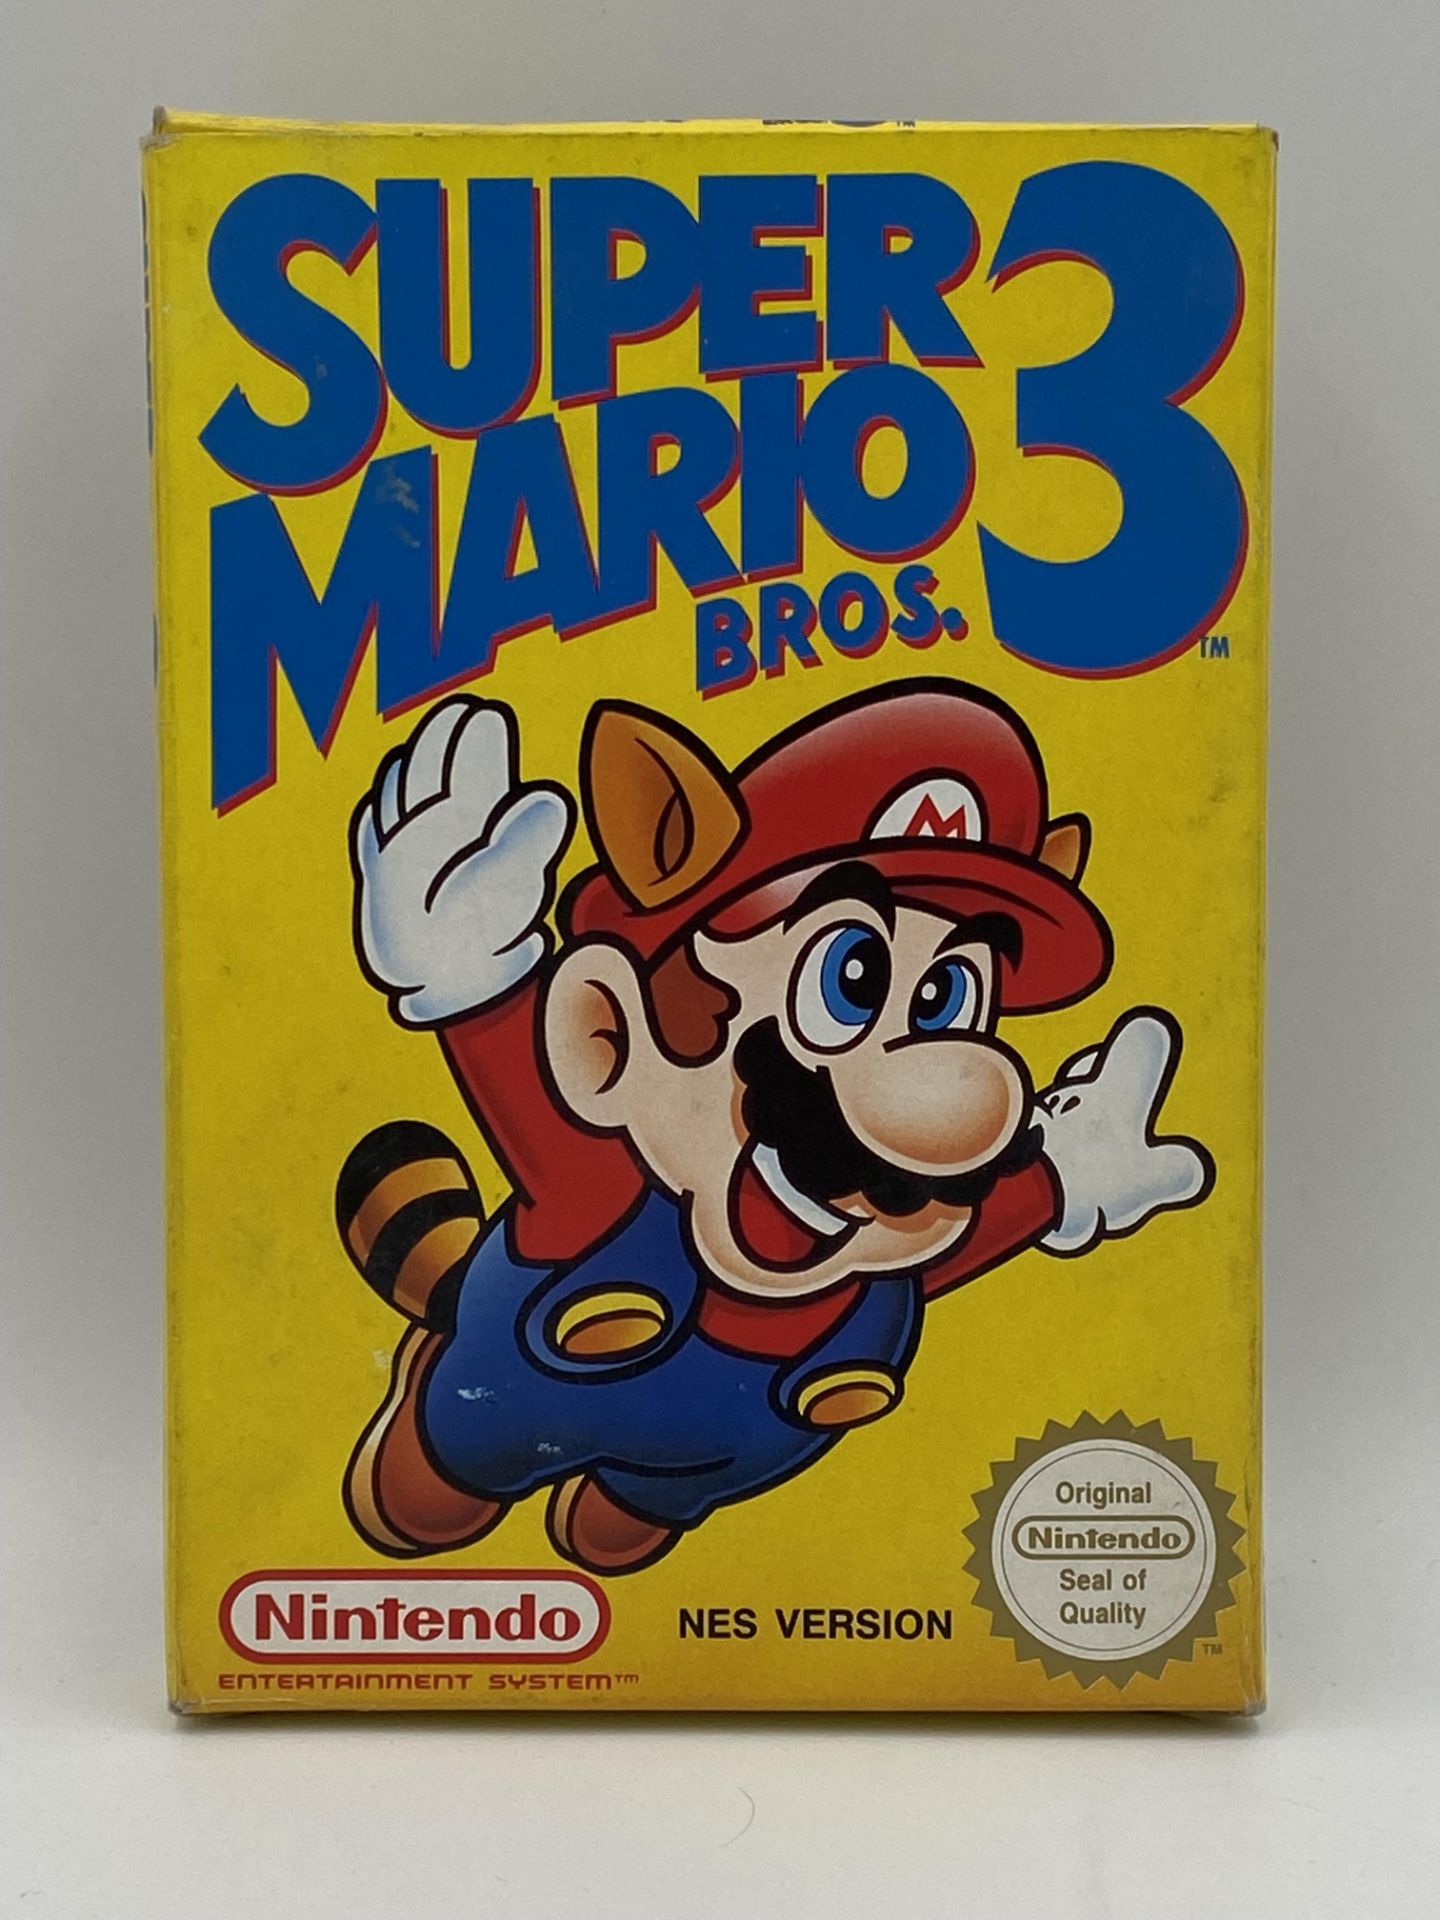 Nintendo NES Super Mario Bros 3, NES Version, boxed